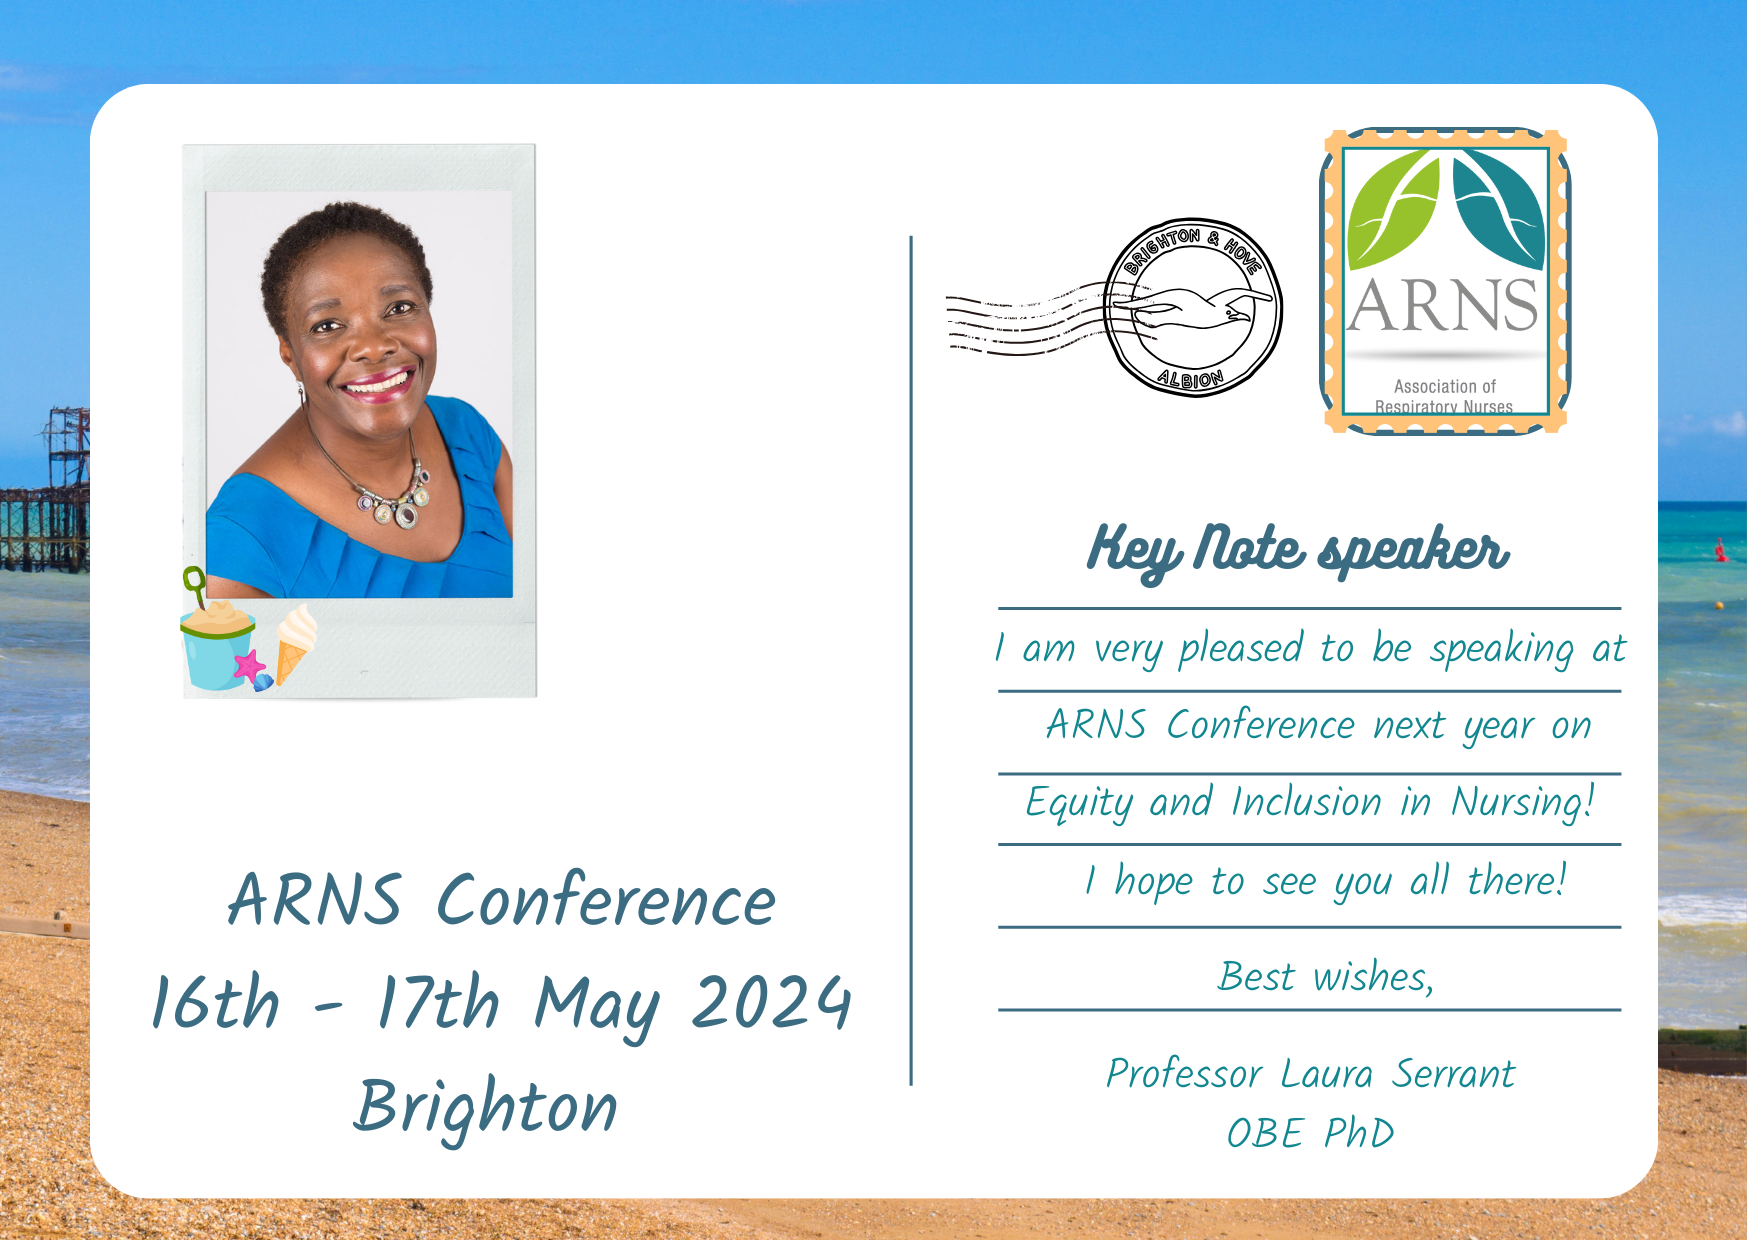 ARNS keynote speaker Postcard Conference 2024